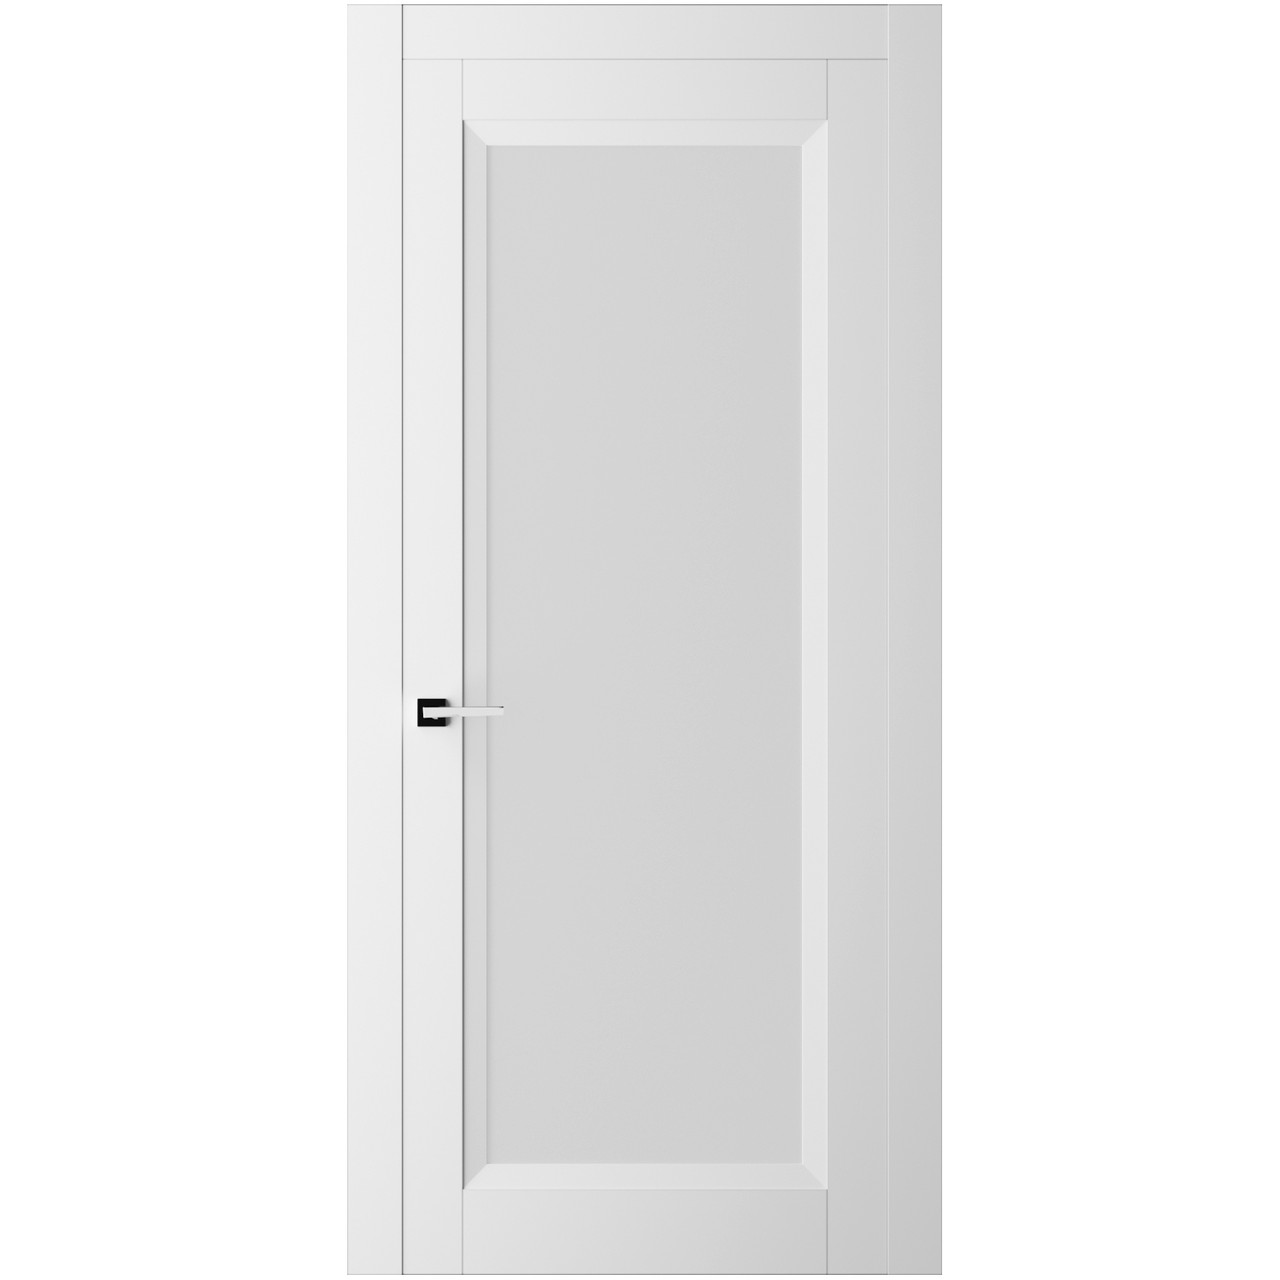 Дверь межкомнатная Ликорн Френч Кат ДКФКГ.3 2000*700*40мм (без замков и петель, с телескопической коробкой и